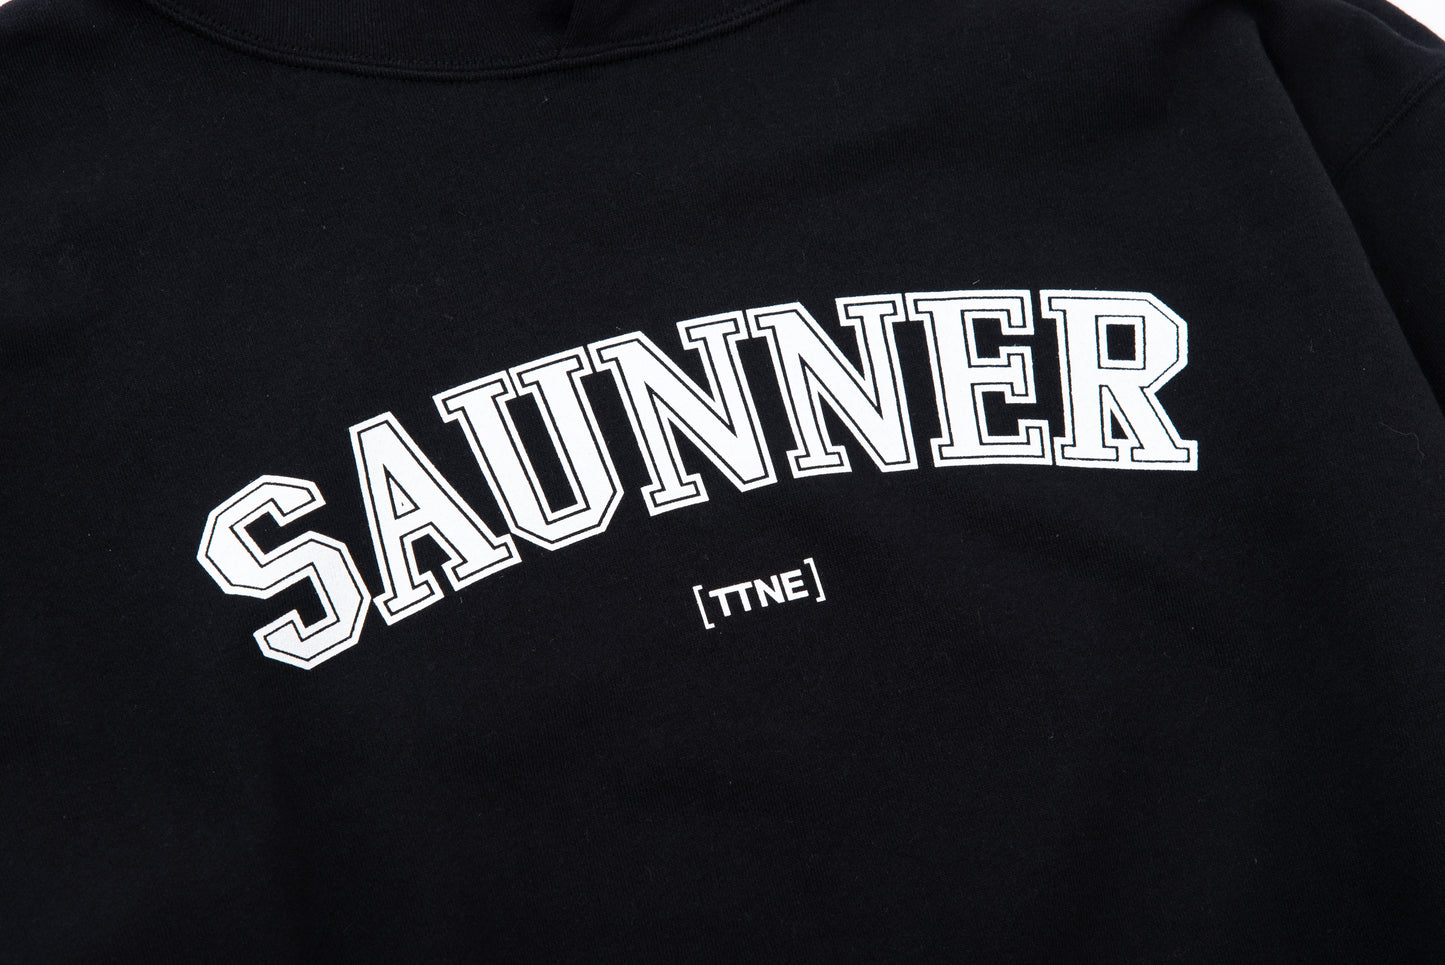 ［TTNE］Saunner College Hooded Sweatshirt